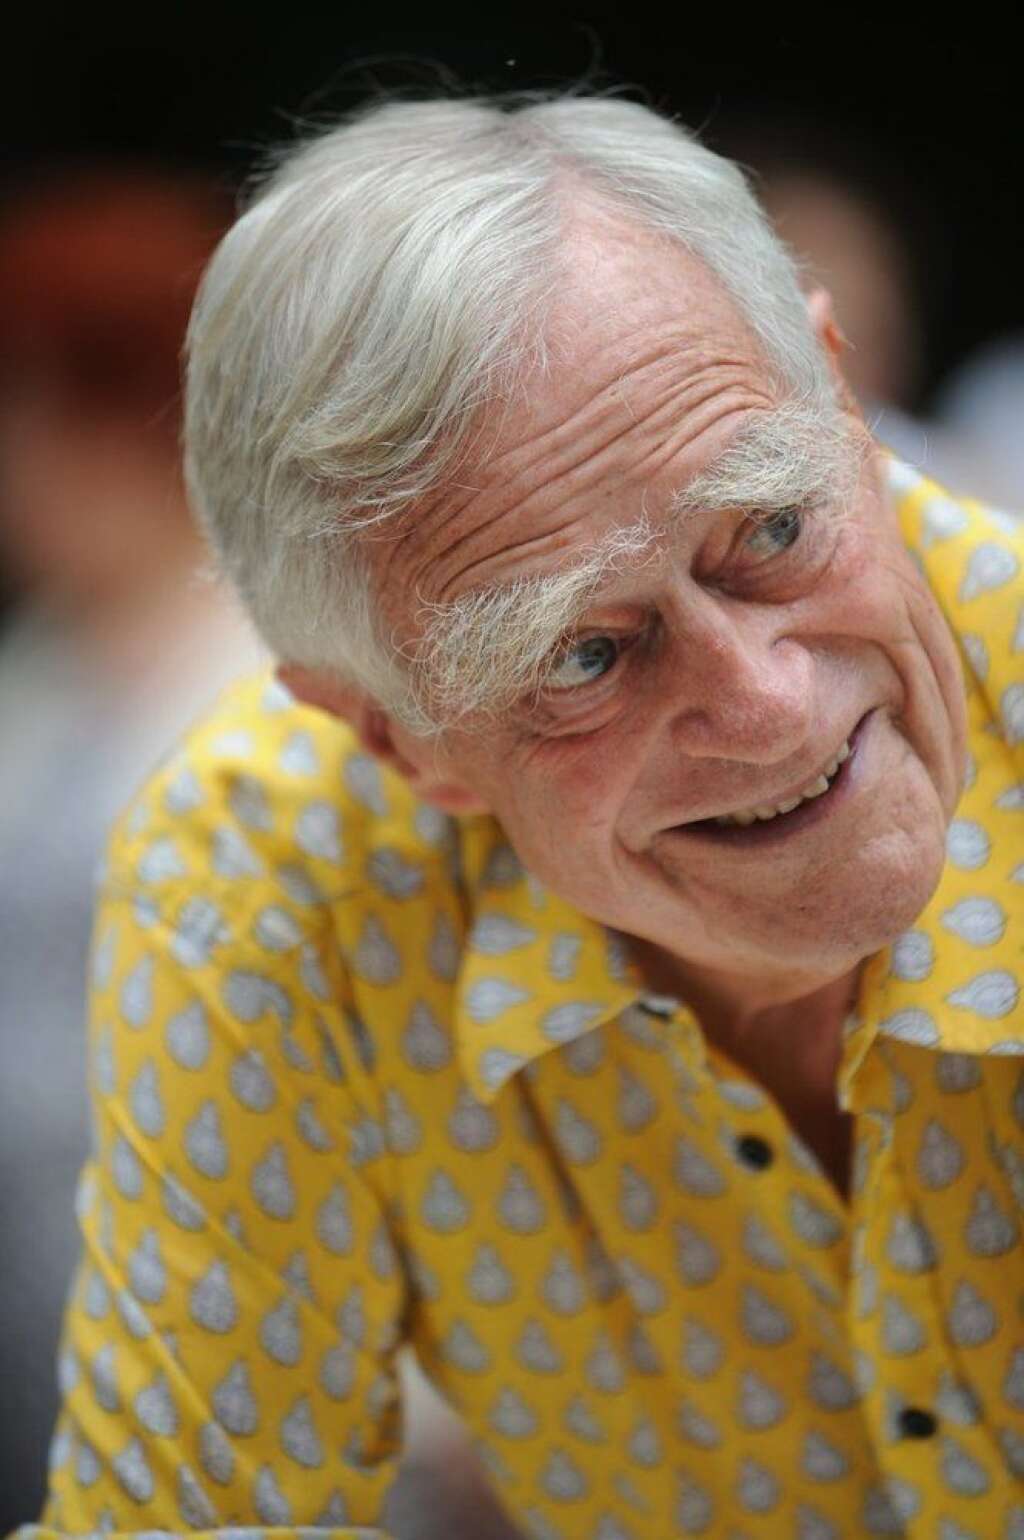 21 juillet - Luc Hoffmann - L'ornithologue suisse Luc Hoffmann, grand défenseur de l'environnement et <a href="http://www.wwf.fr/?9440/Luc-Hoffmann-disparition-dun-pere-fondateur-du-WWF" target="_hplink">co-fondateur du Fonds mondial pour la nature (WWF)</a>, est décédé jeudi 21 juillet à l'âge de 93 ans en Camargue, région dont il a été un grand mécène.  La Tour du Valat, <a href="http://www.tourduvalat.org/" target="_hplink">centre de recherches qu'il a fondé</a>, l'a annoncé vendredi 22 juillet.  <strong>» Lire notre article complet <a href="http://www.huffingtonpost.fr/2016/07/22/luc-hoffmann-mort-defenseur-environnement-wwf-arles-camargue-decede-93-ans_n_11135122.html?1469194478" target="_blank">en cliquant ici</a>.</strong>